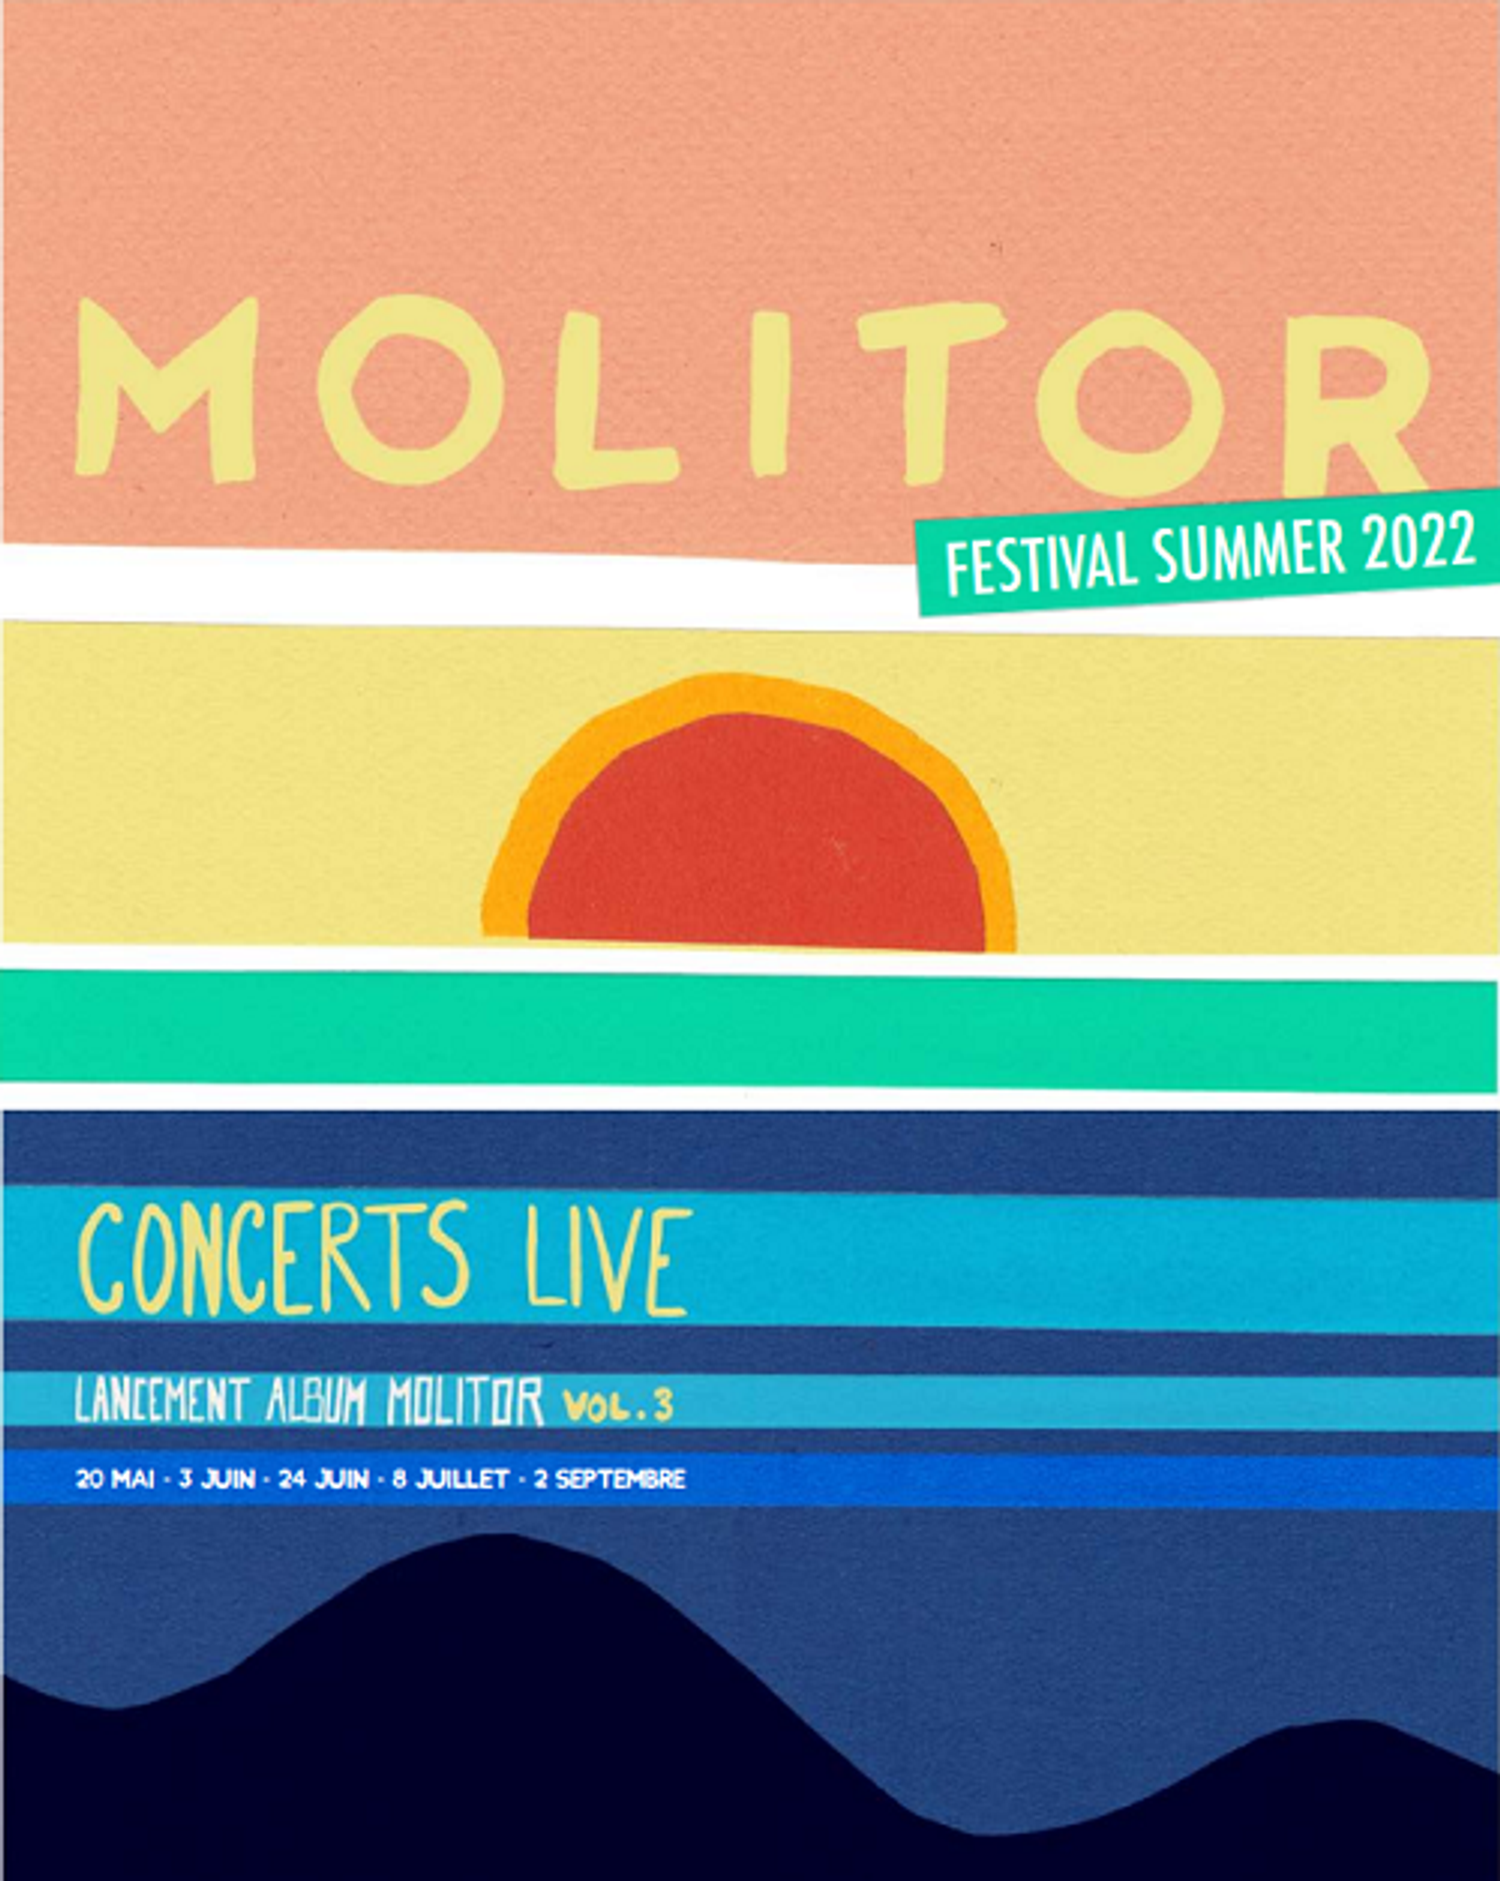 Le Molitor Festival va rythmer votre été